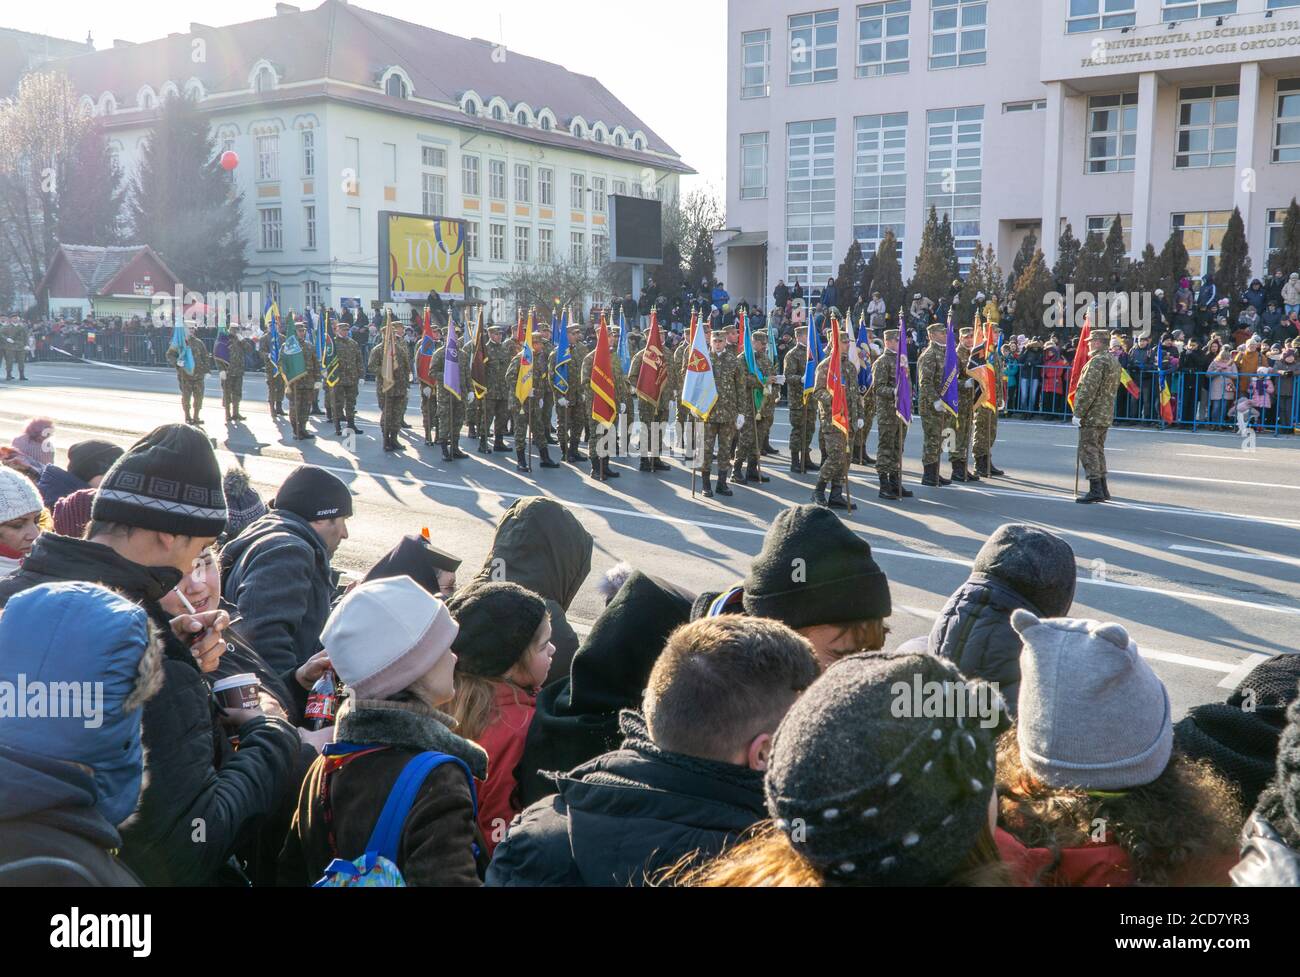 Alba Iulia, Rumänien - 01.12.2018: Militärangehörige warten darauf, an der Militärparade zum Nationalfeiertag Rumäniens teilzunehmen Stockfoto